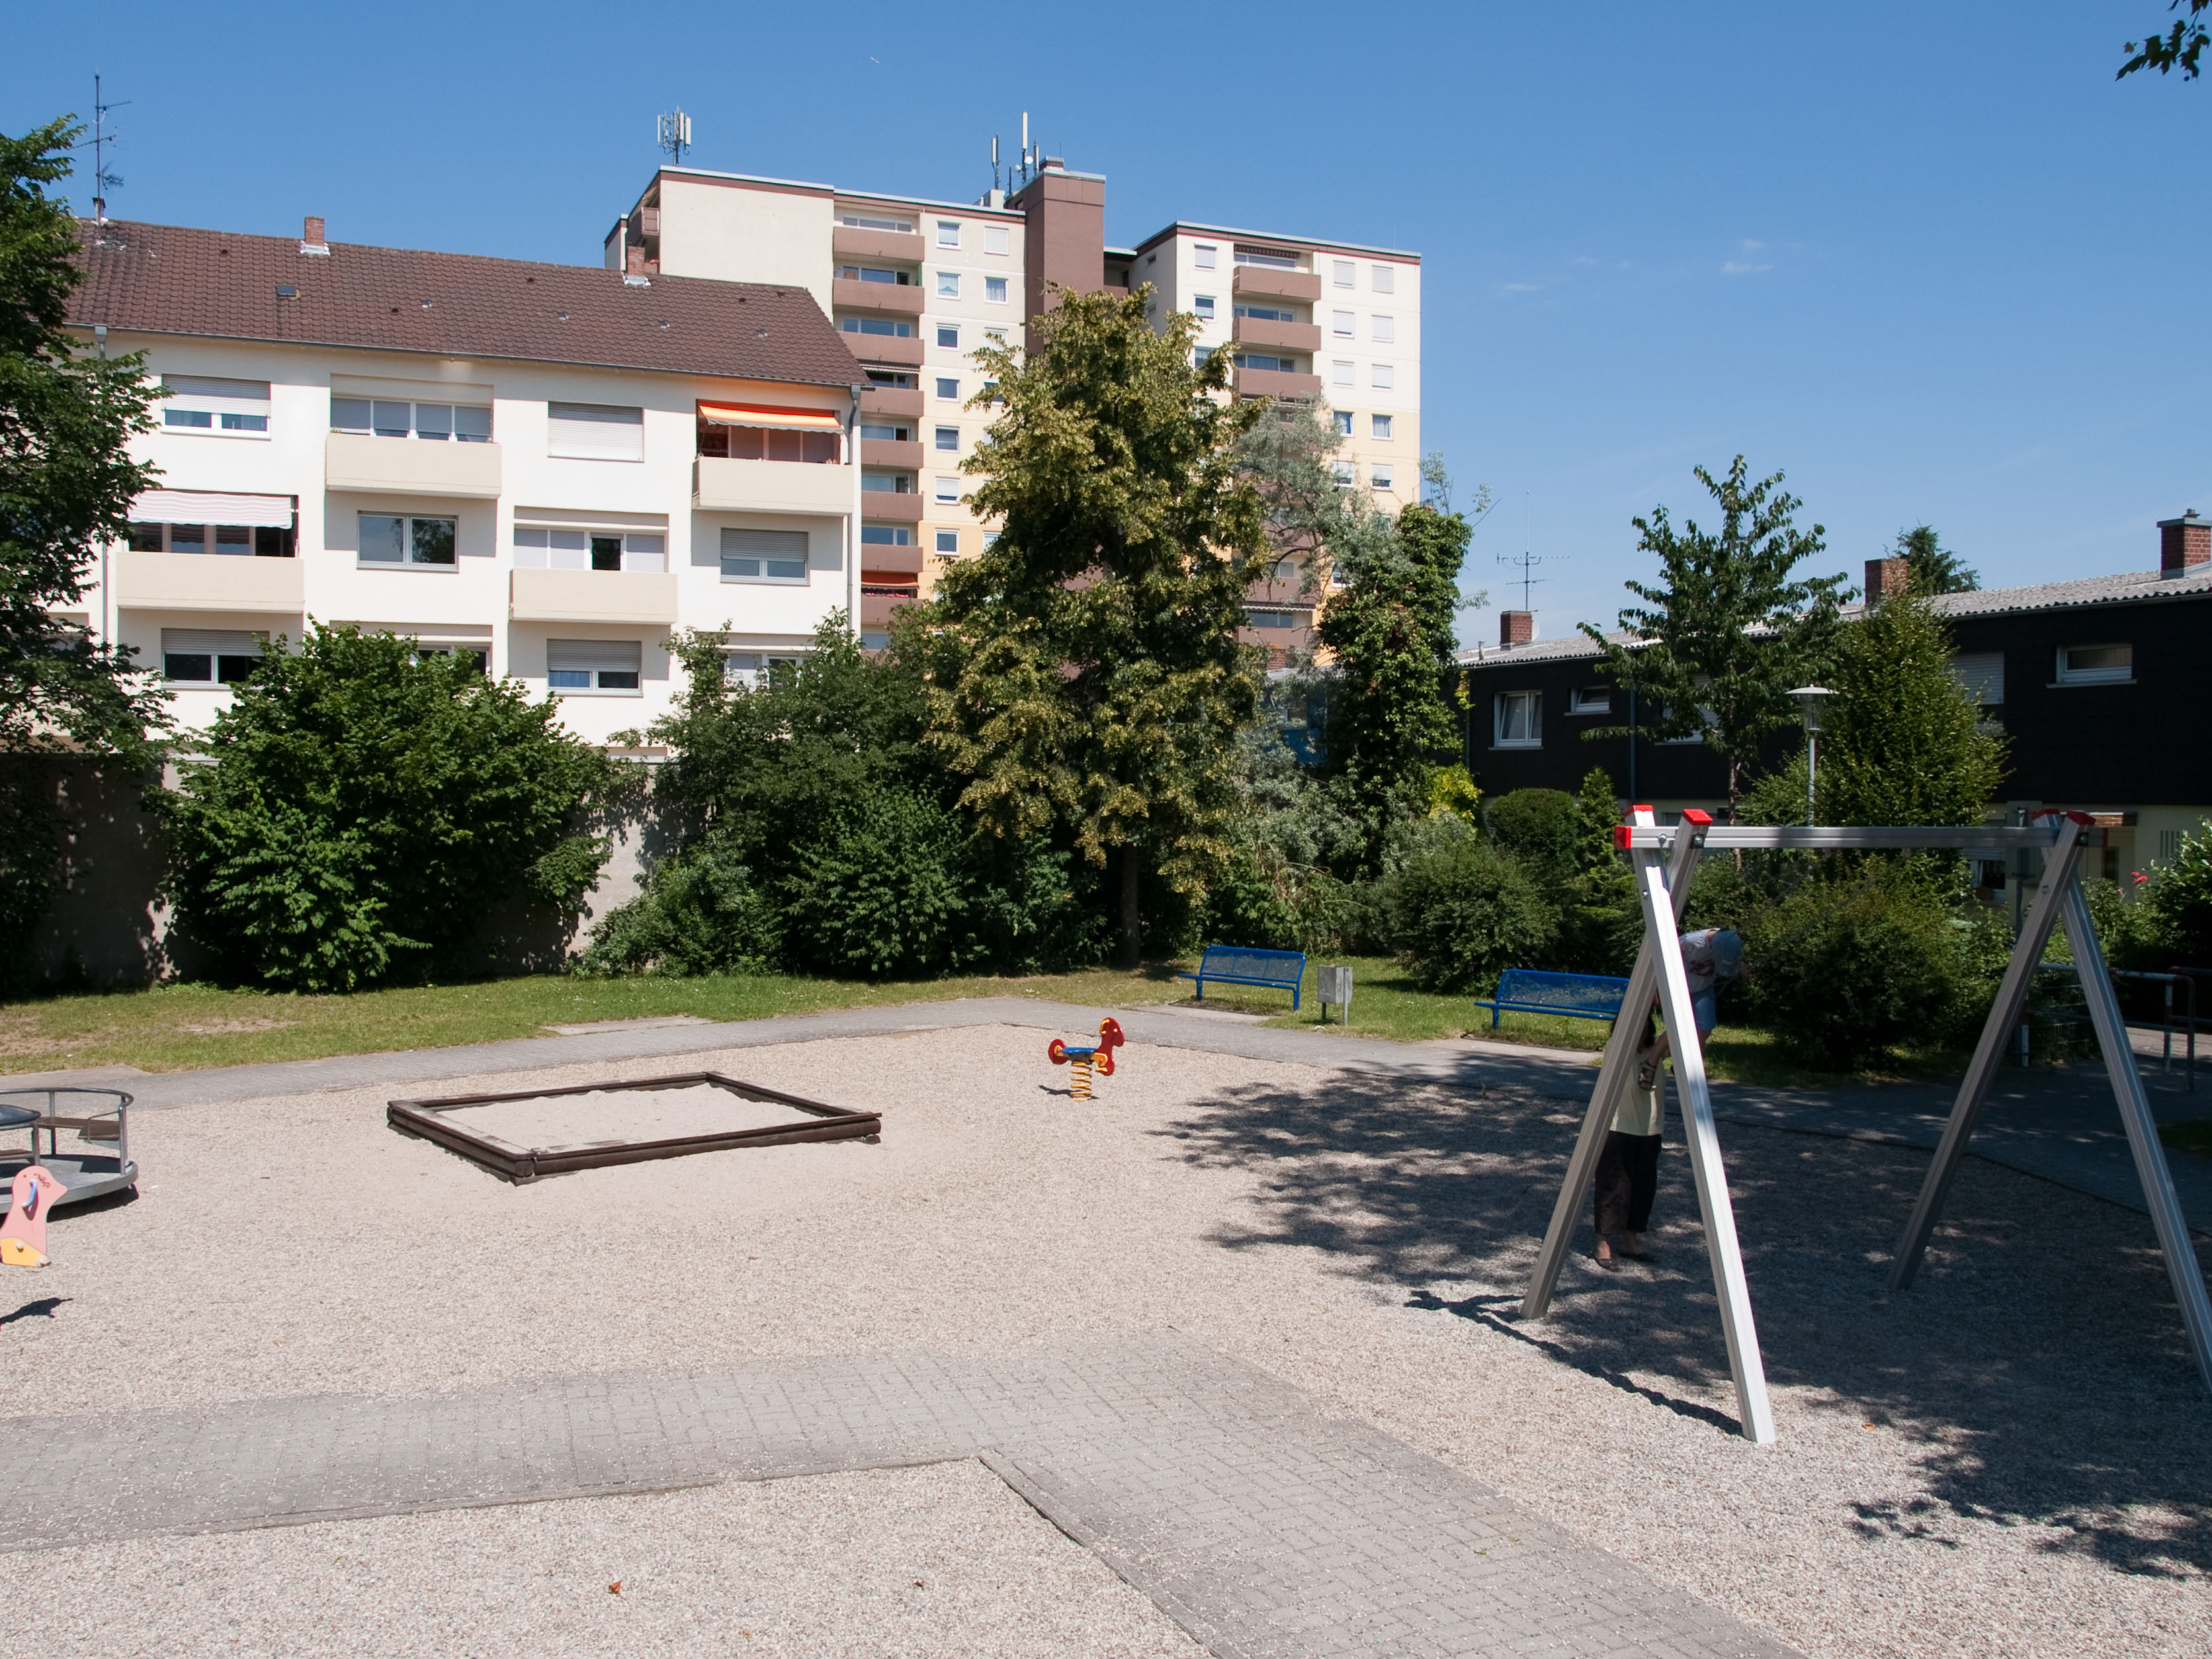 Spielplatz Grenzhöfer Straße Schwetzingen-4.jpg